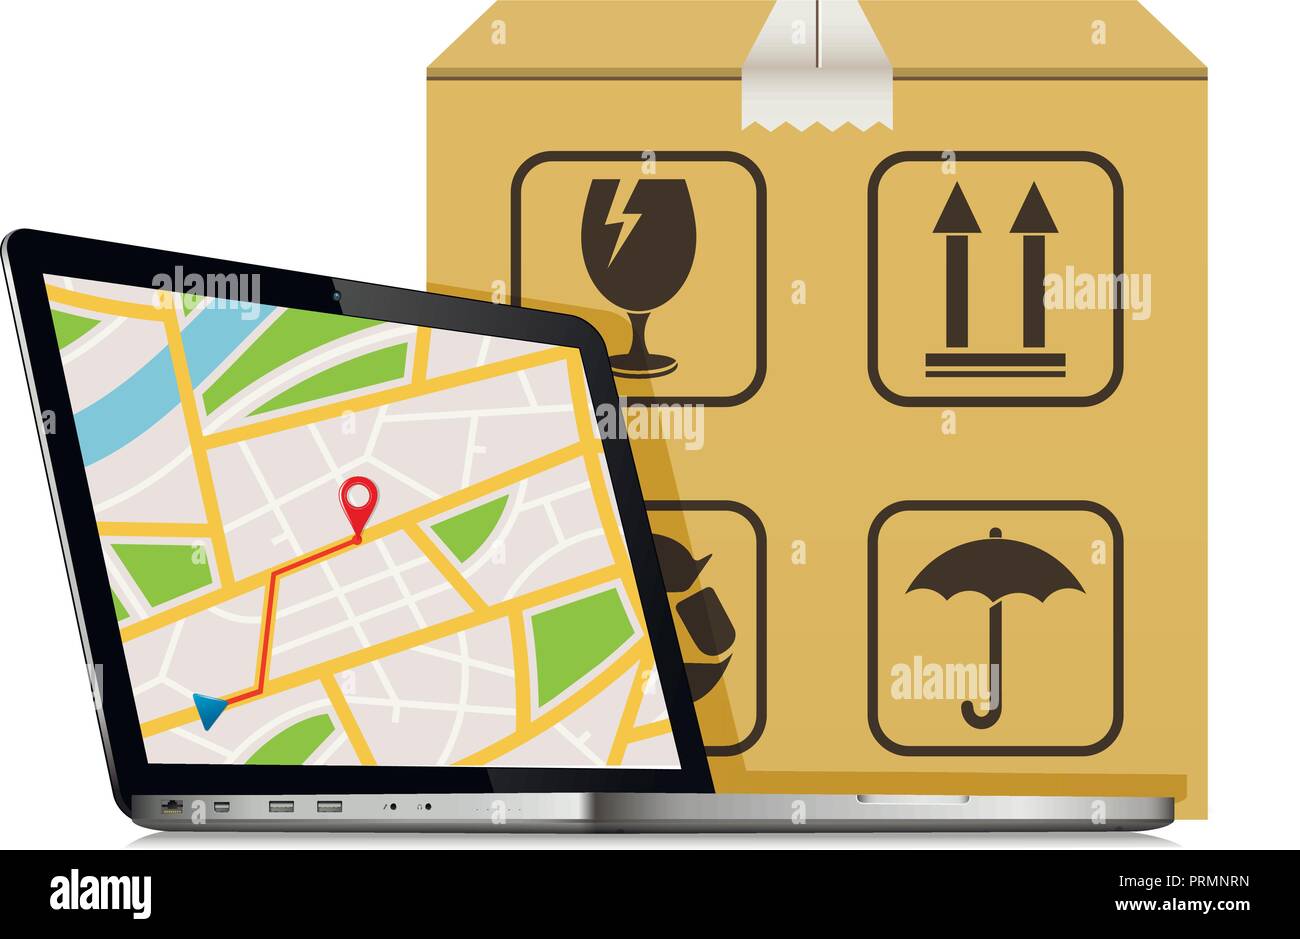 Liefer- Paket bestellen Design. Laptop mit GPS-Karte auf dem Bildschirm und Karton mit Verpackung Symbole. Stock Vektor